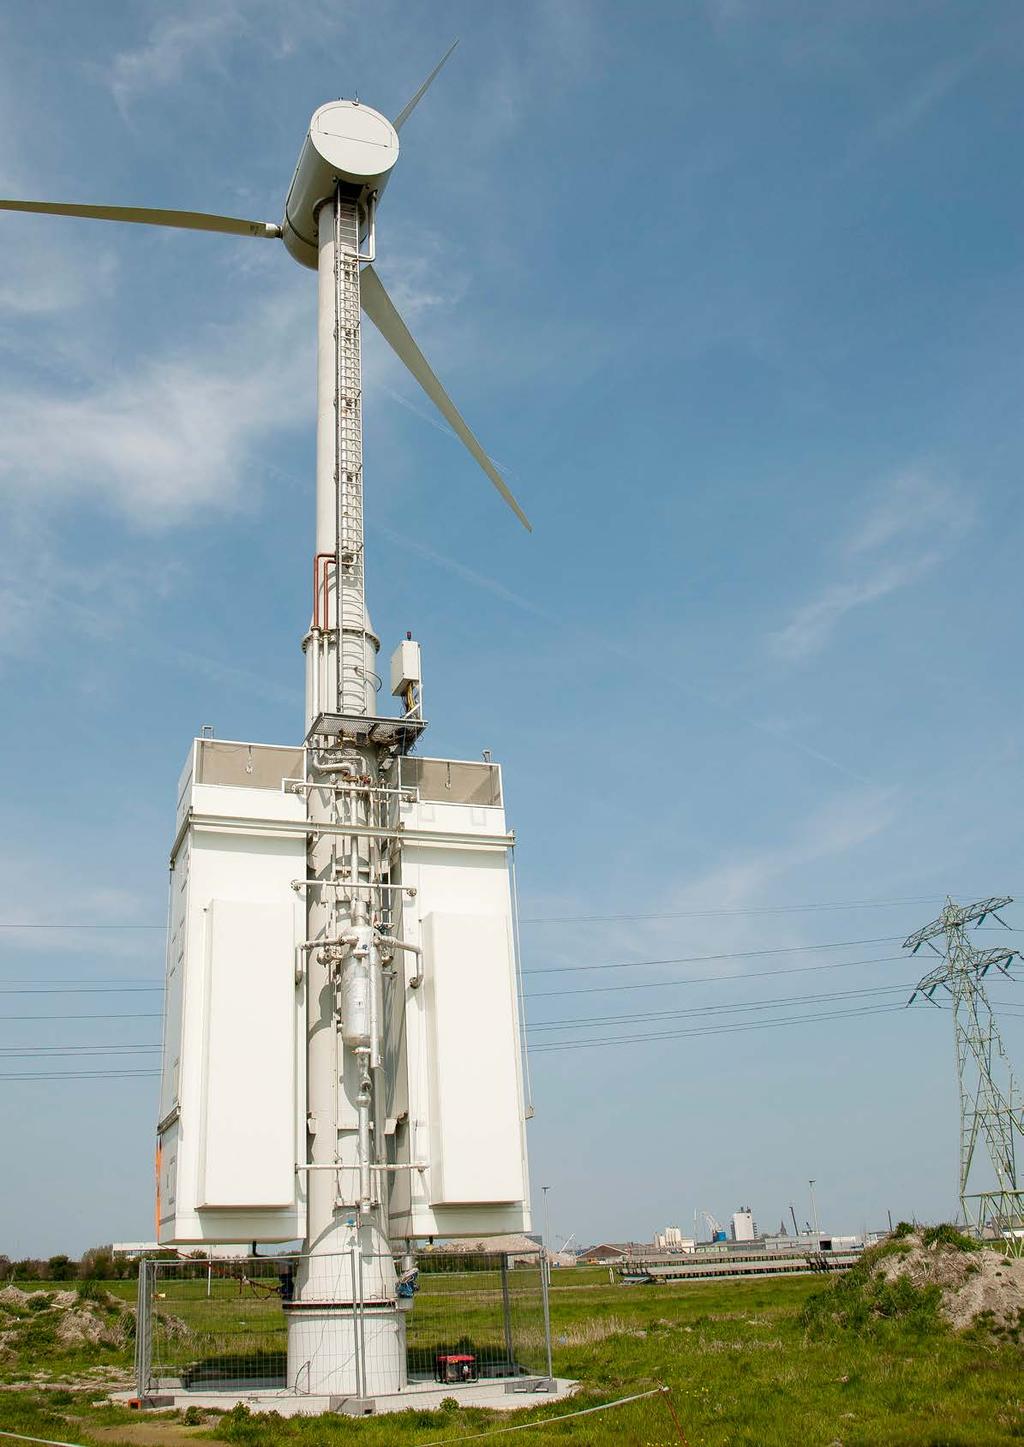 Voorbeelden van technische innovaties Dutch Rainmaker maakt een windmolen, die uit vocht in de lucht circa 7500 liter water per dag kan produceren.